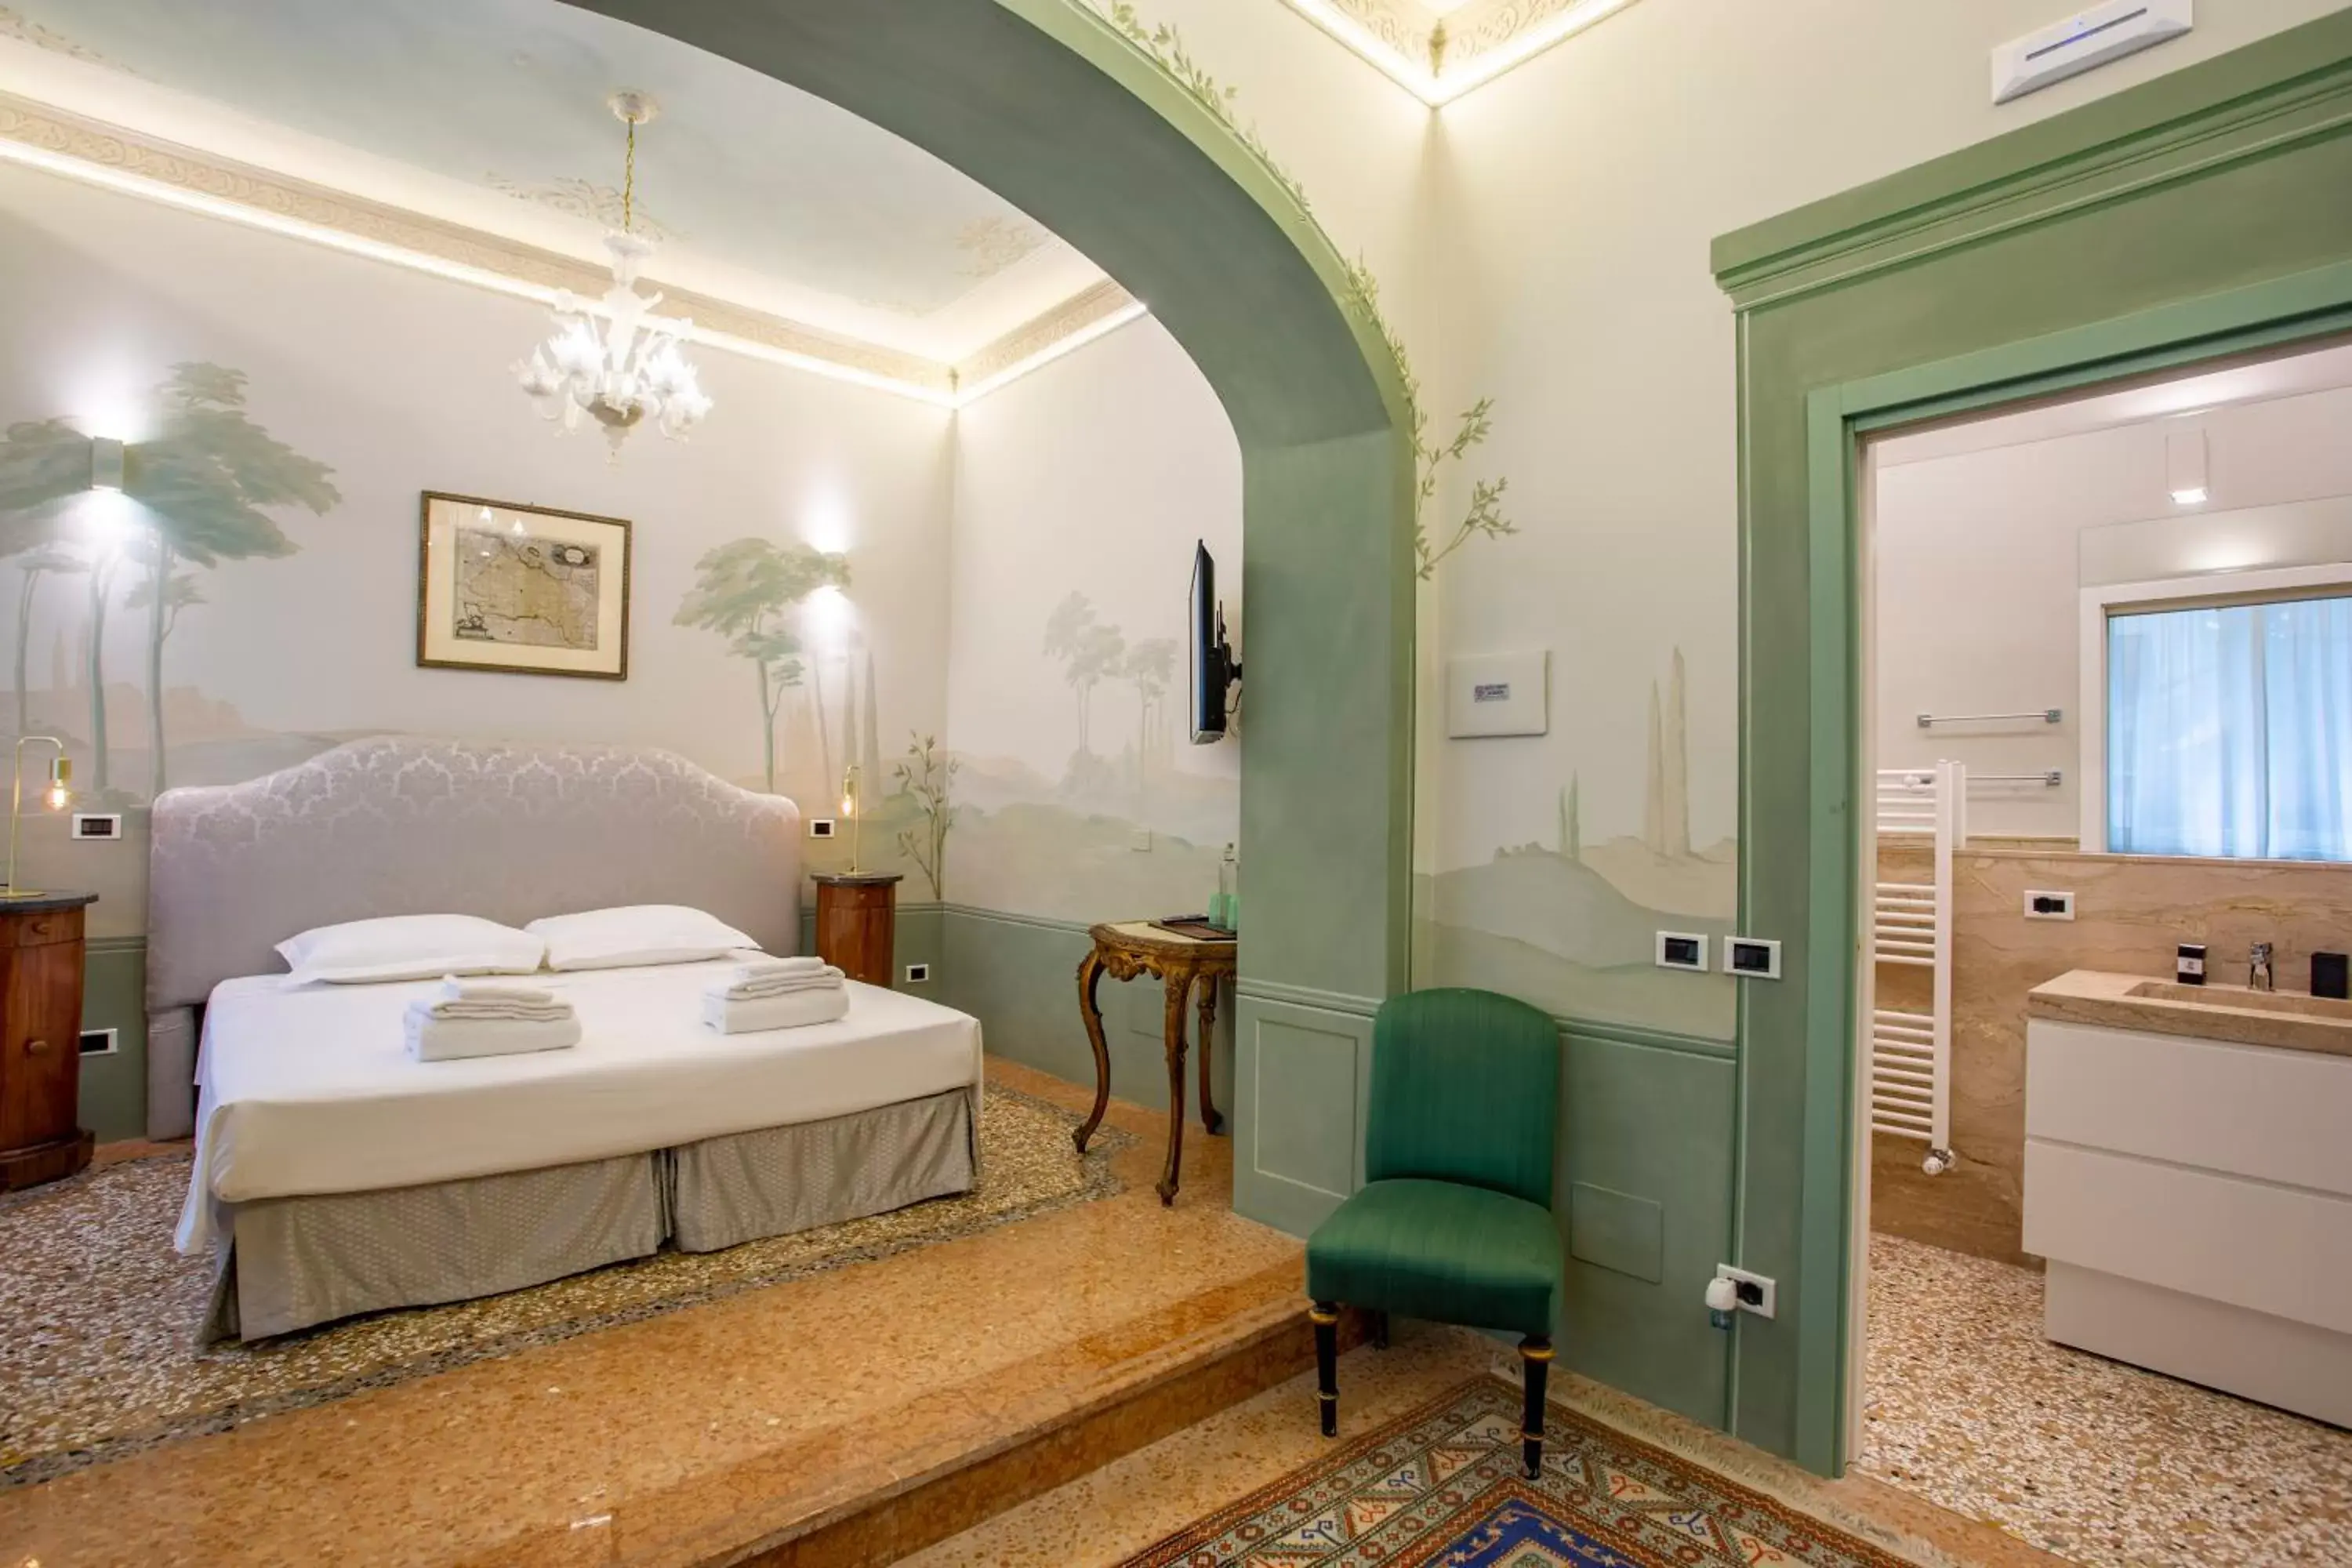 Photo of the whole room, Bathroom in Villa Tortorelli